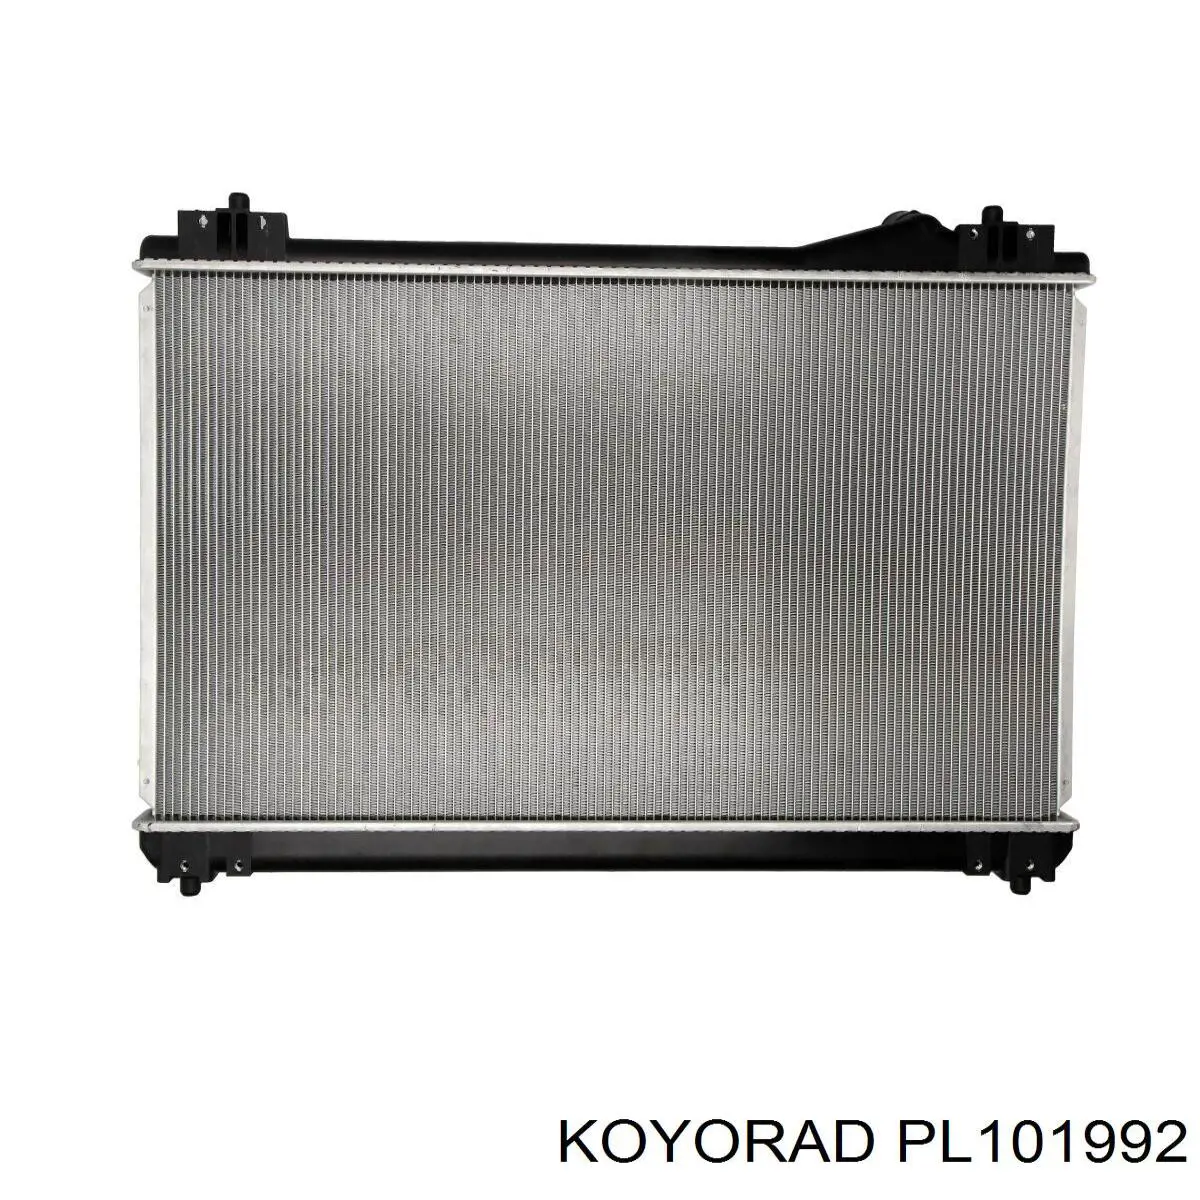 PL101992 Koyorad radiador